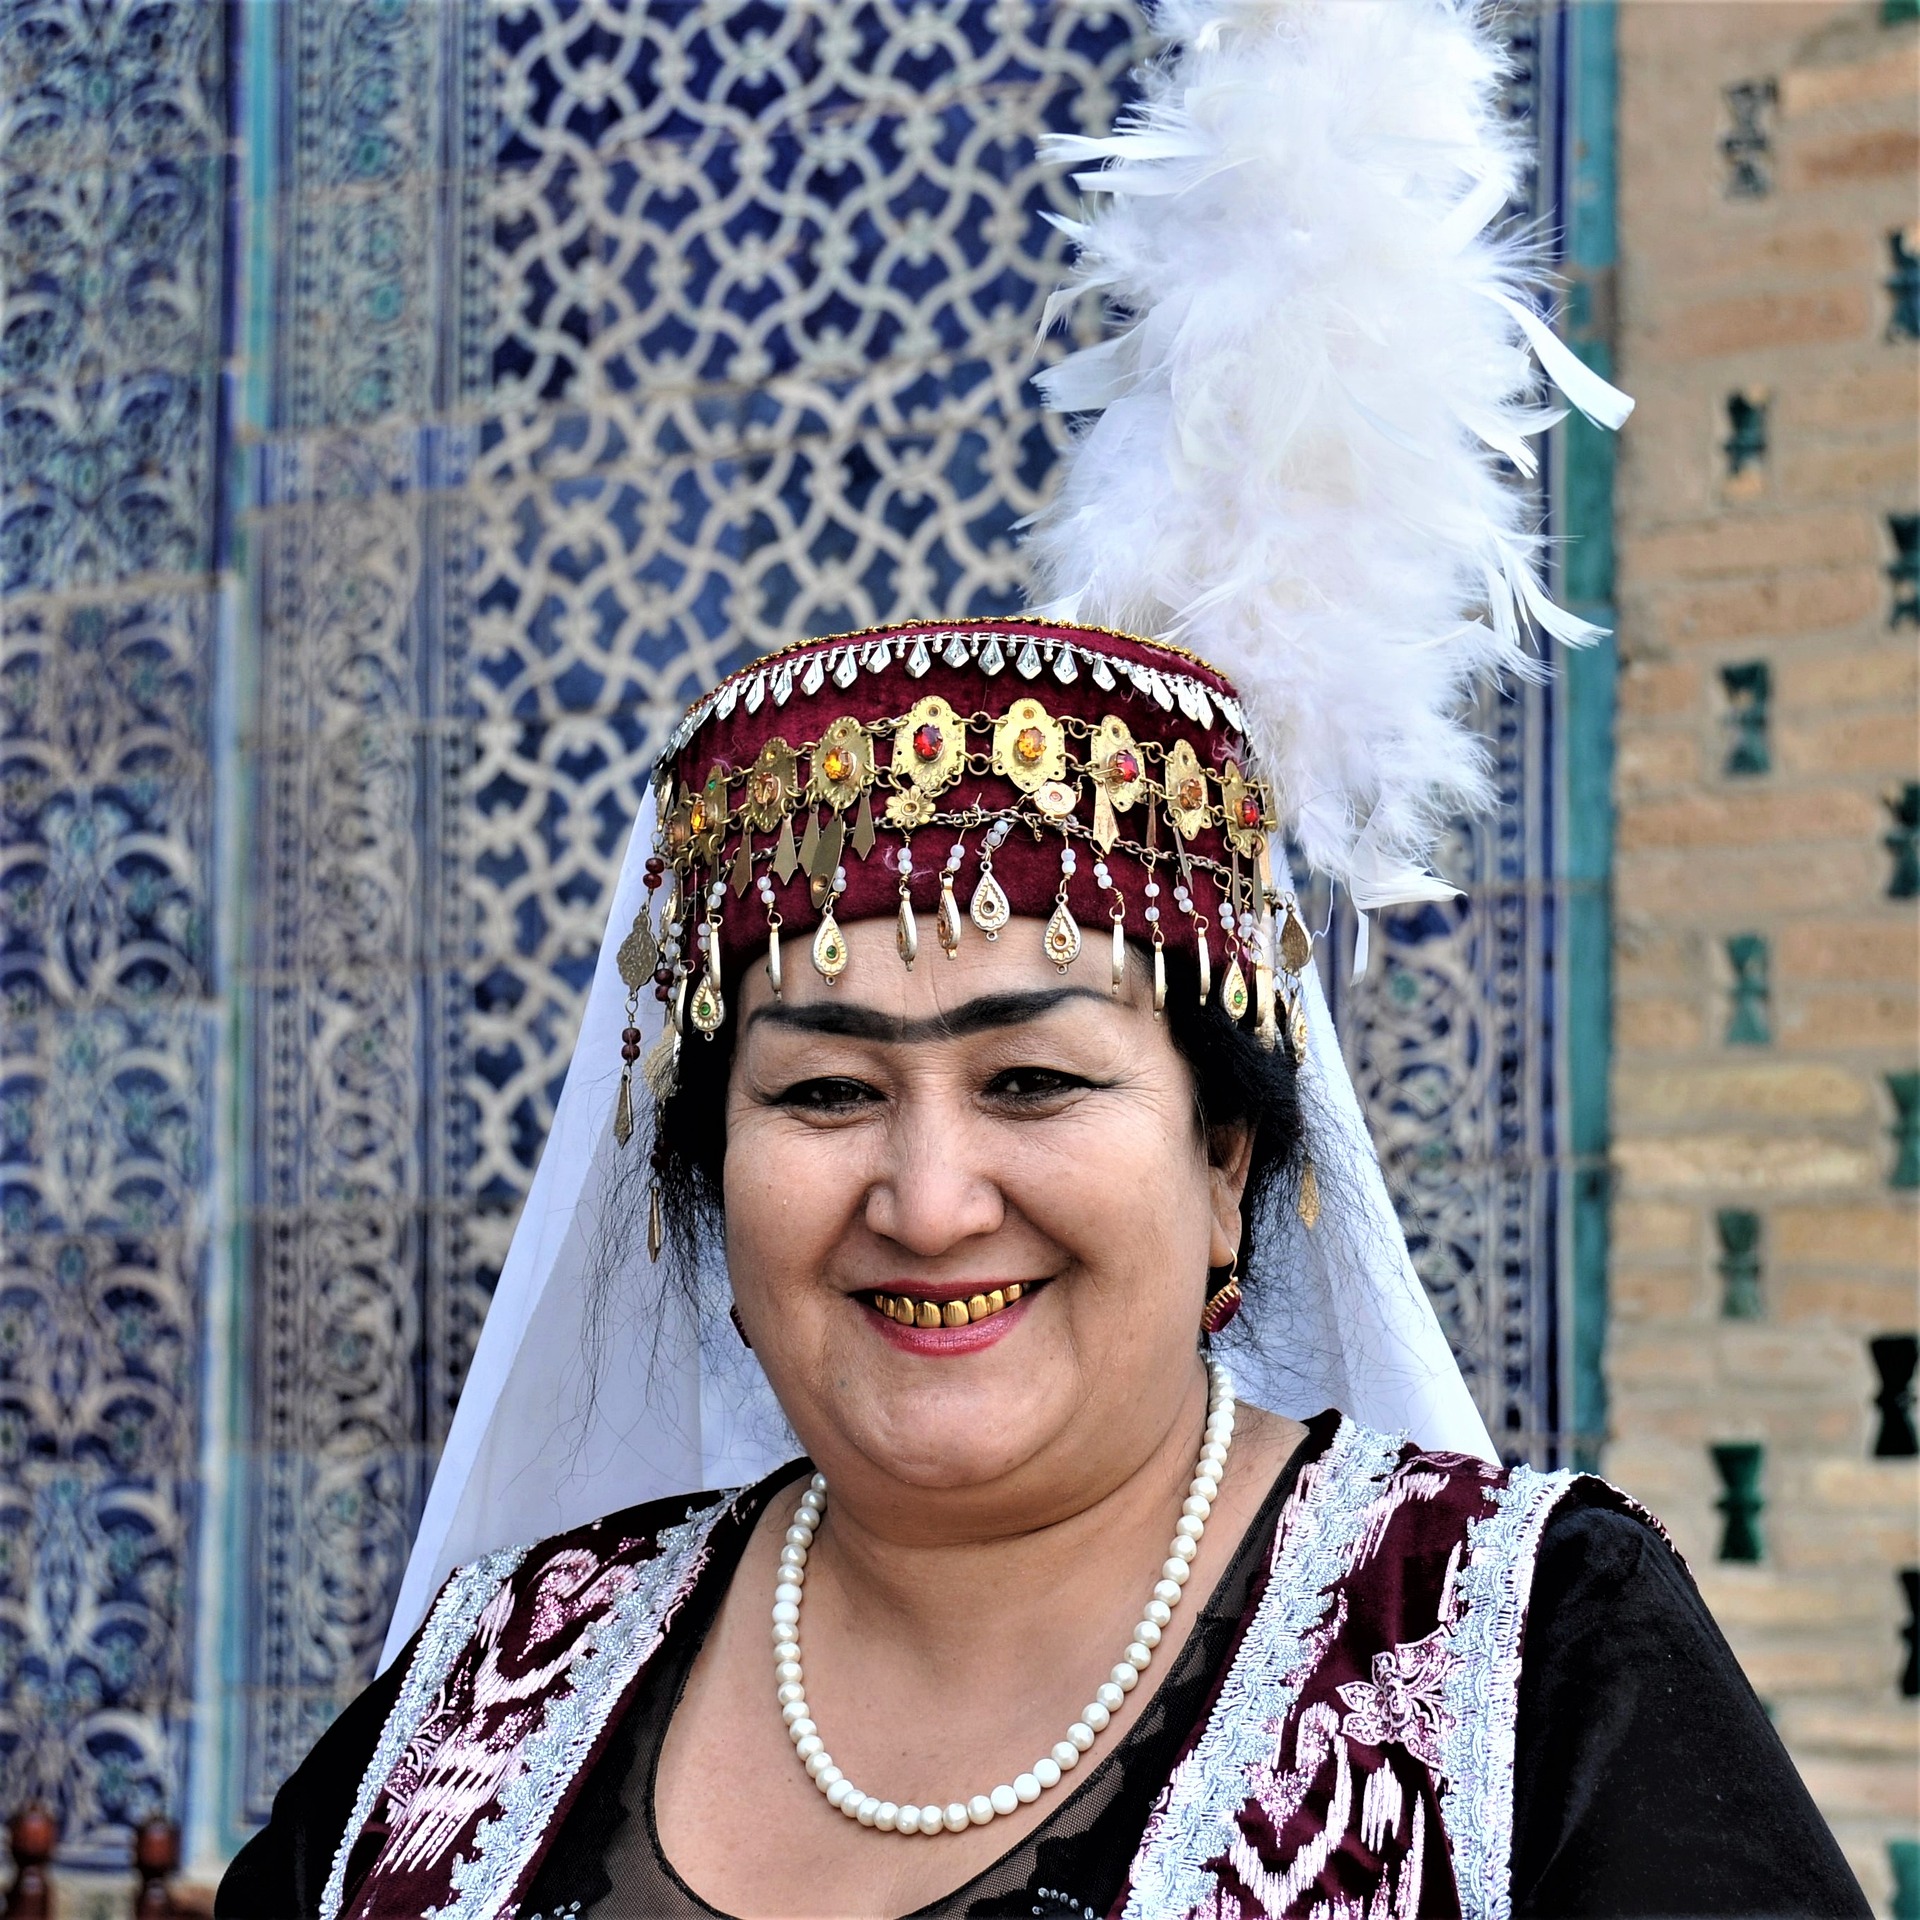 Uzbekkinainen juhlapuvussa